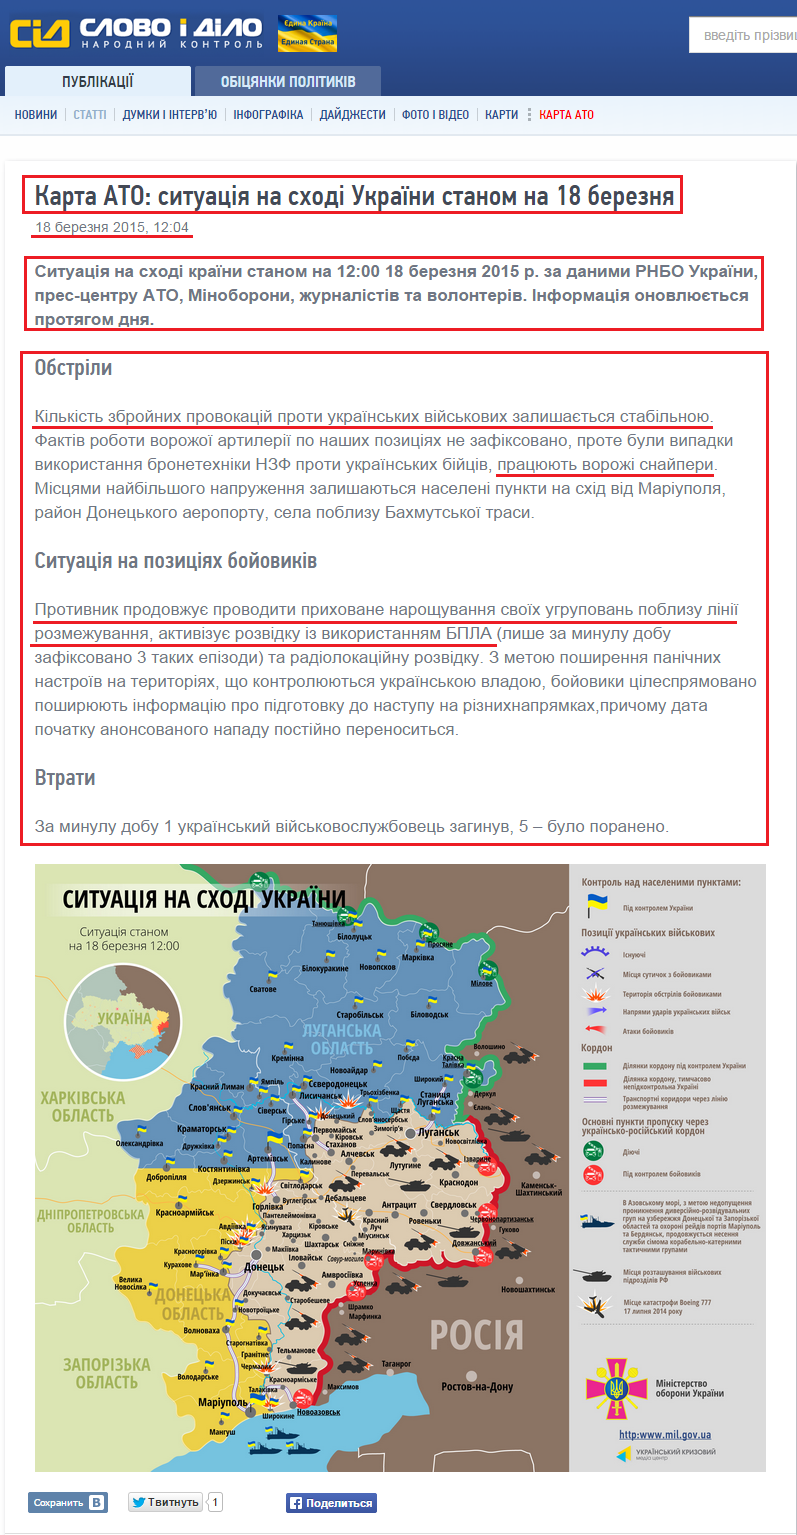 http://www.slovoidilo.ua/articles/8342/2015-03-18/karta-ato-situaciya-na-vostoke-ukrainy-po-sostoyaniyu-na-18-marta.html